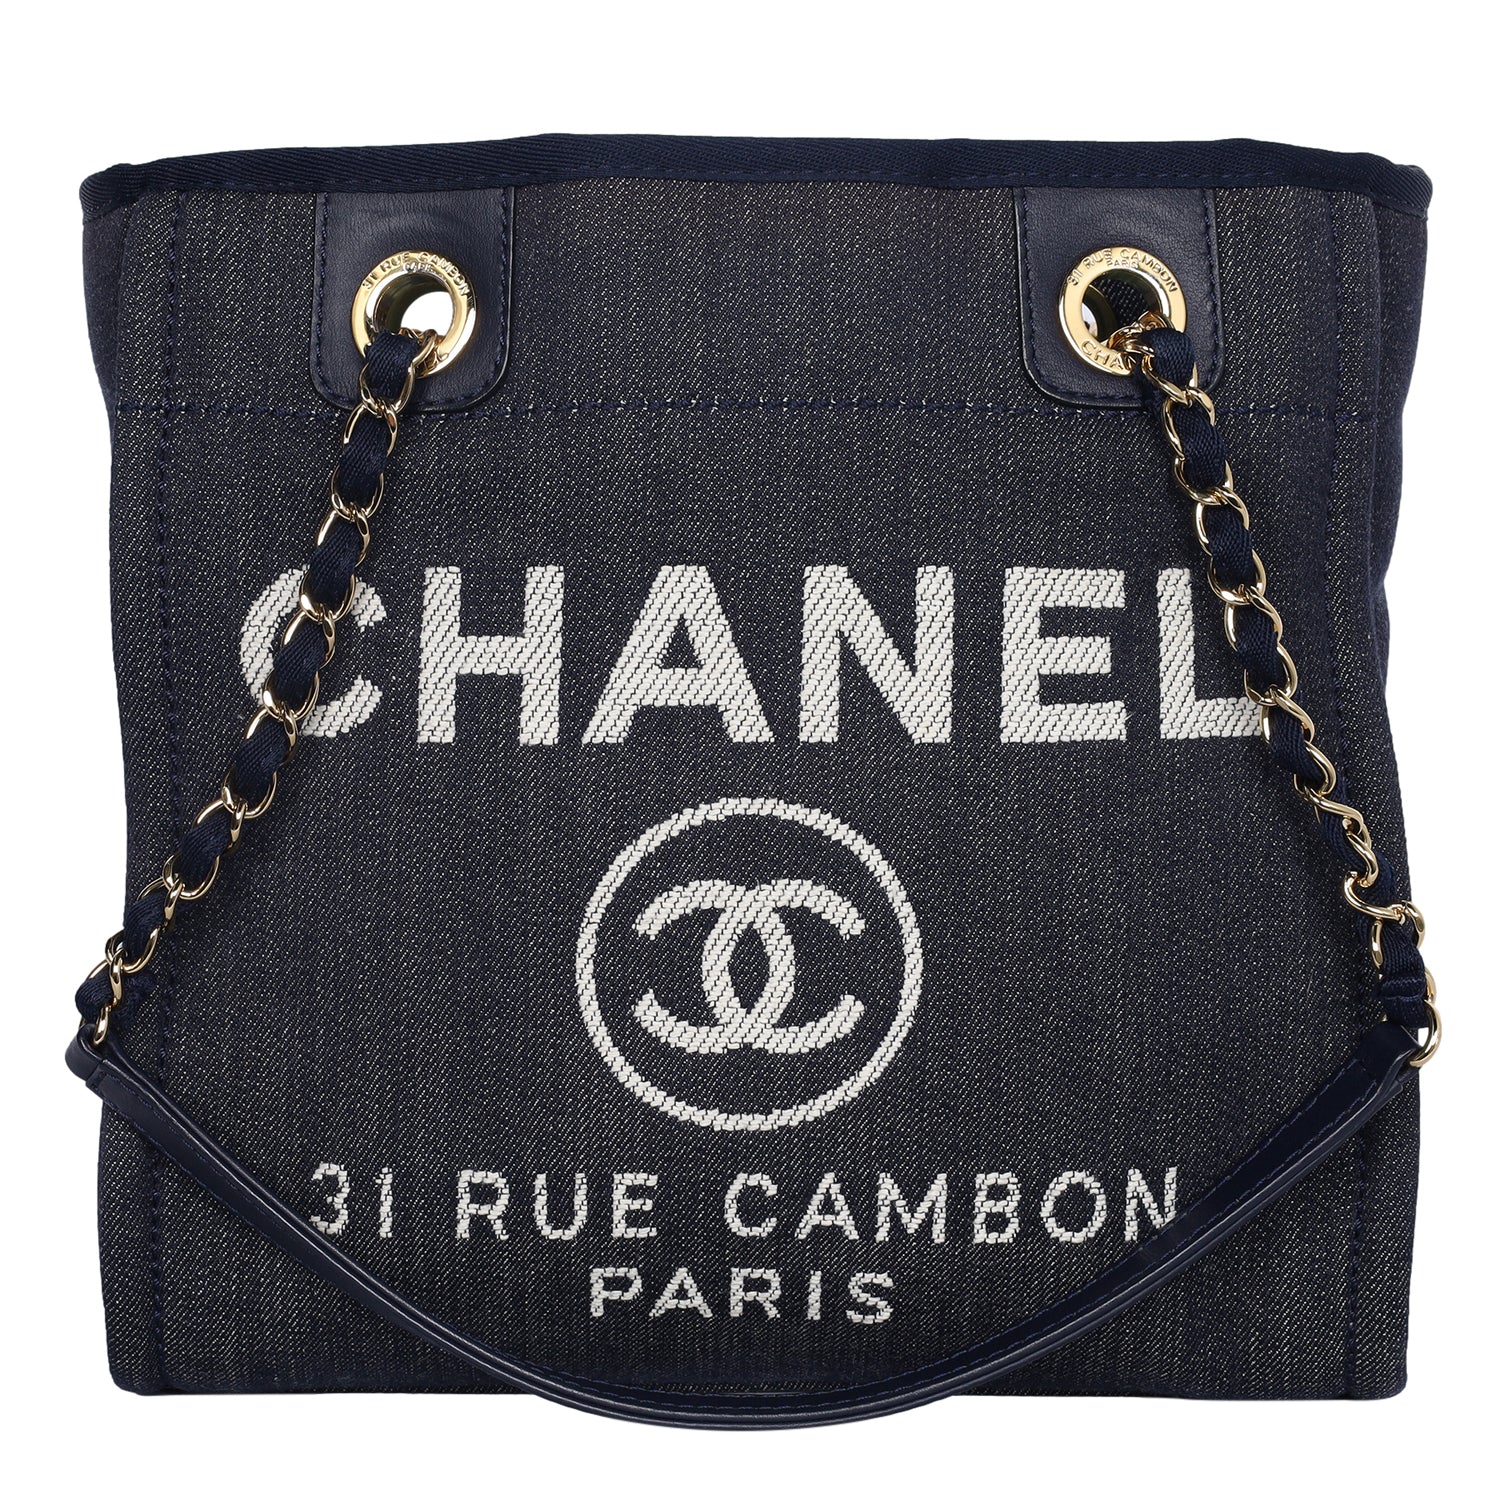 Chanel Cambon Small Tote Bag Beige Black